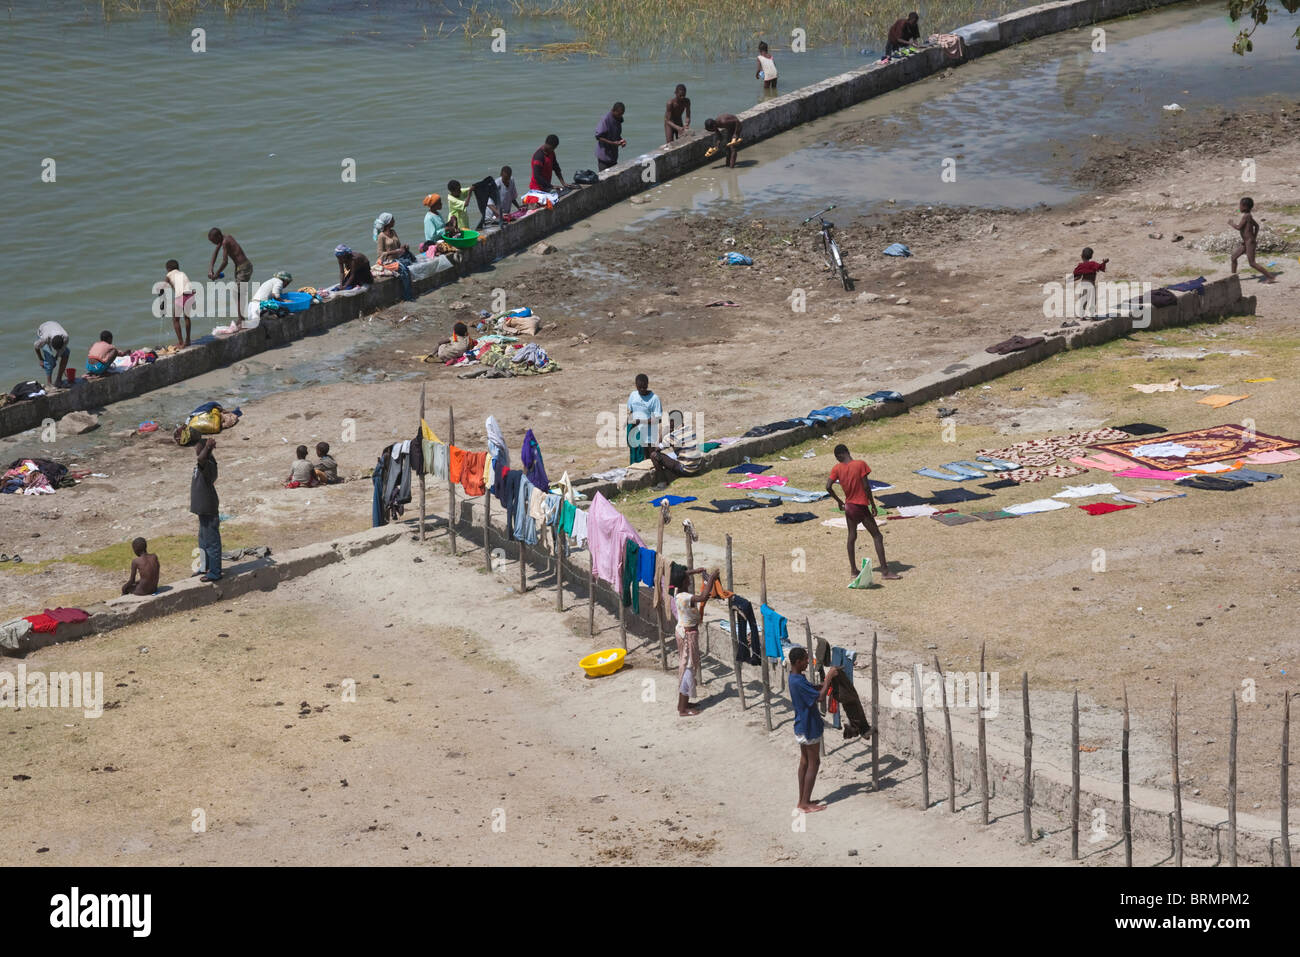 Los lugareños se reunieron en el lago Awassa para hacer su lavado con coloridas prendas colgadas en una valla para secar Foto de stock